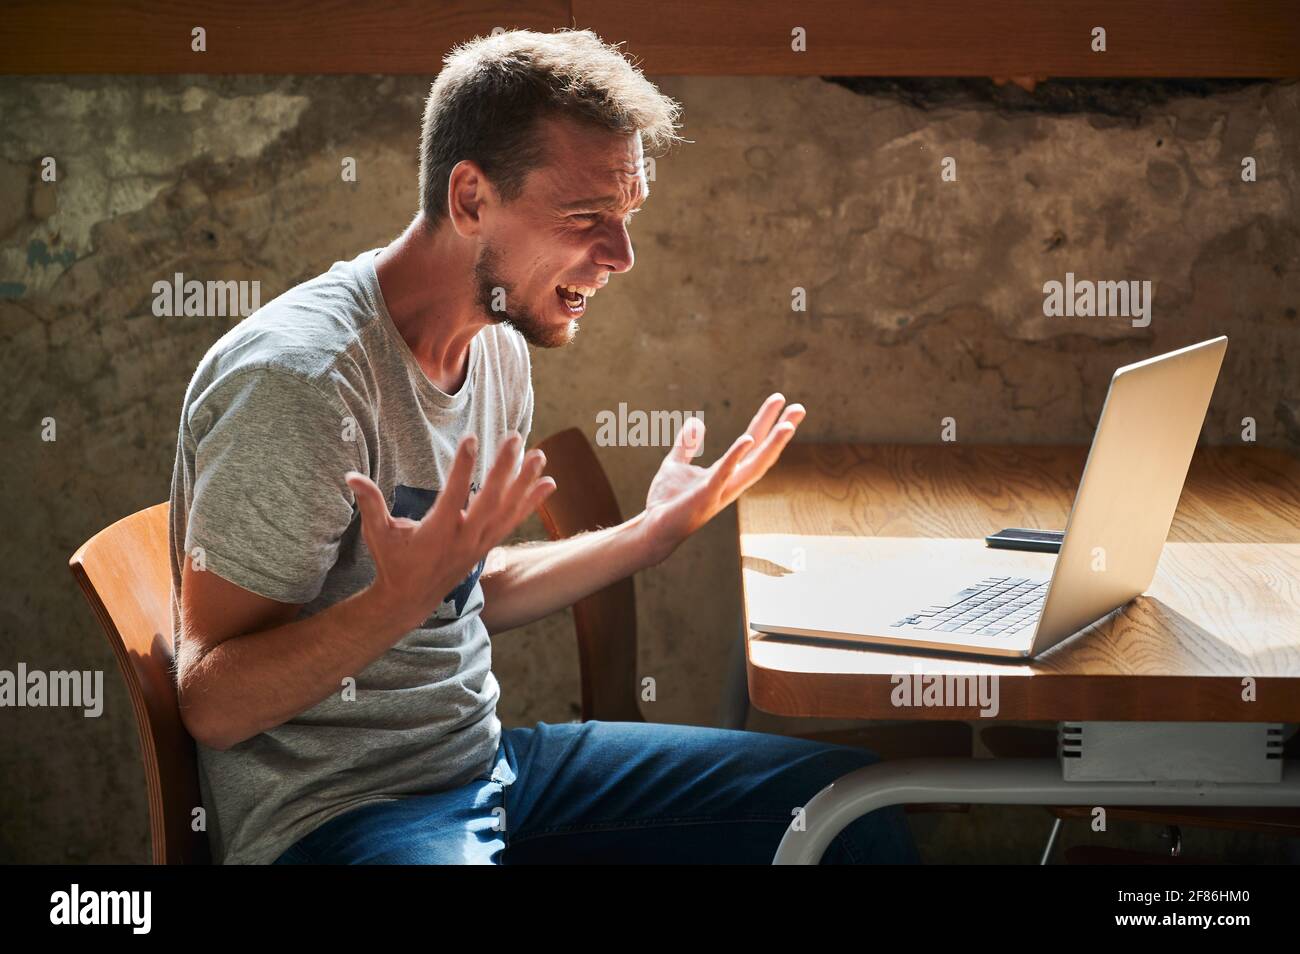 Seitenansicht eines verärgerten jungen Mannes, der mit einem Laptop arbeitet oder studiert. Konzept der verschiedenen Emotionen während der Arbeit im Café. Stockfoto